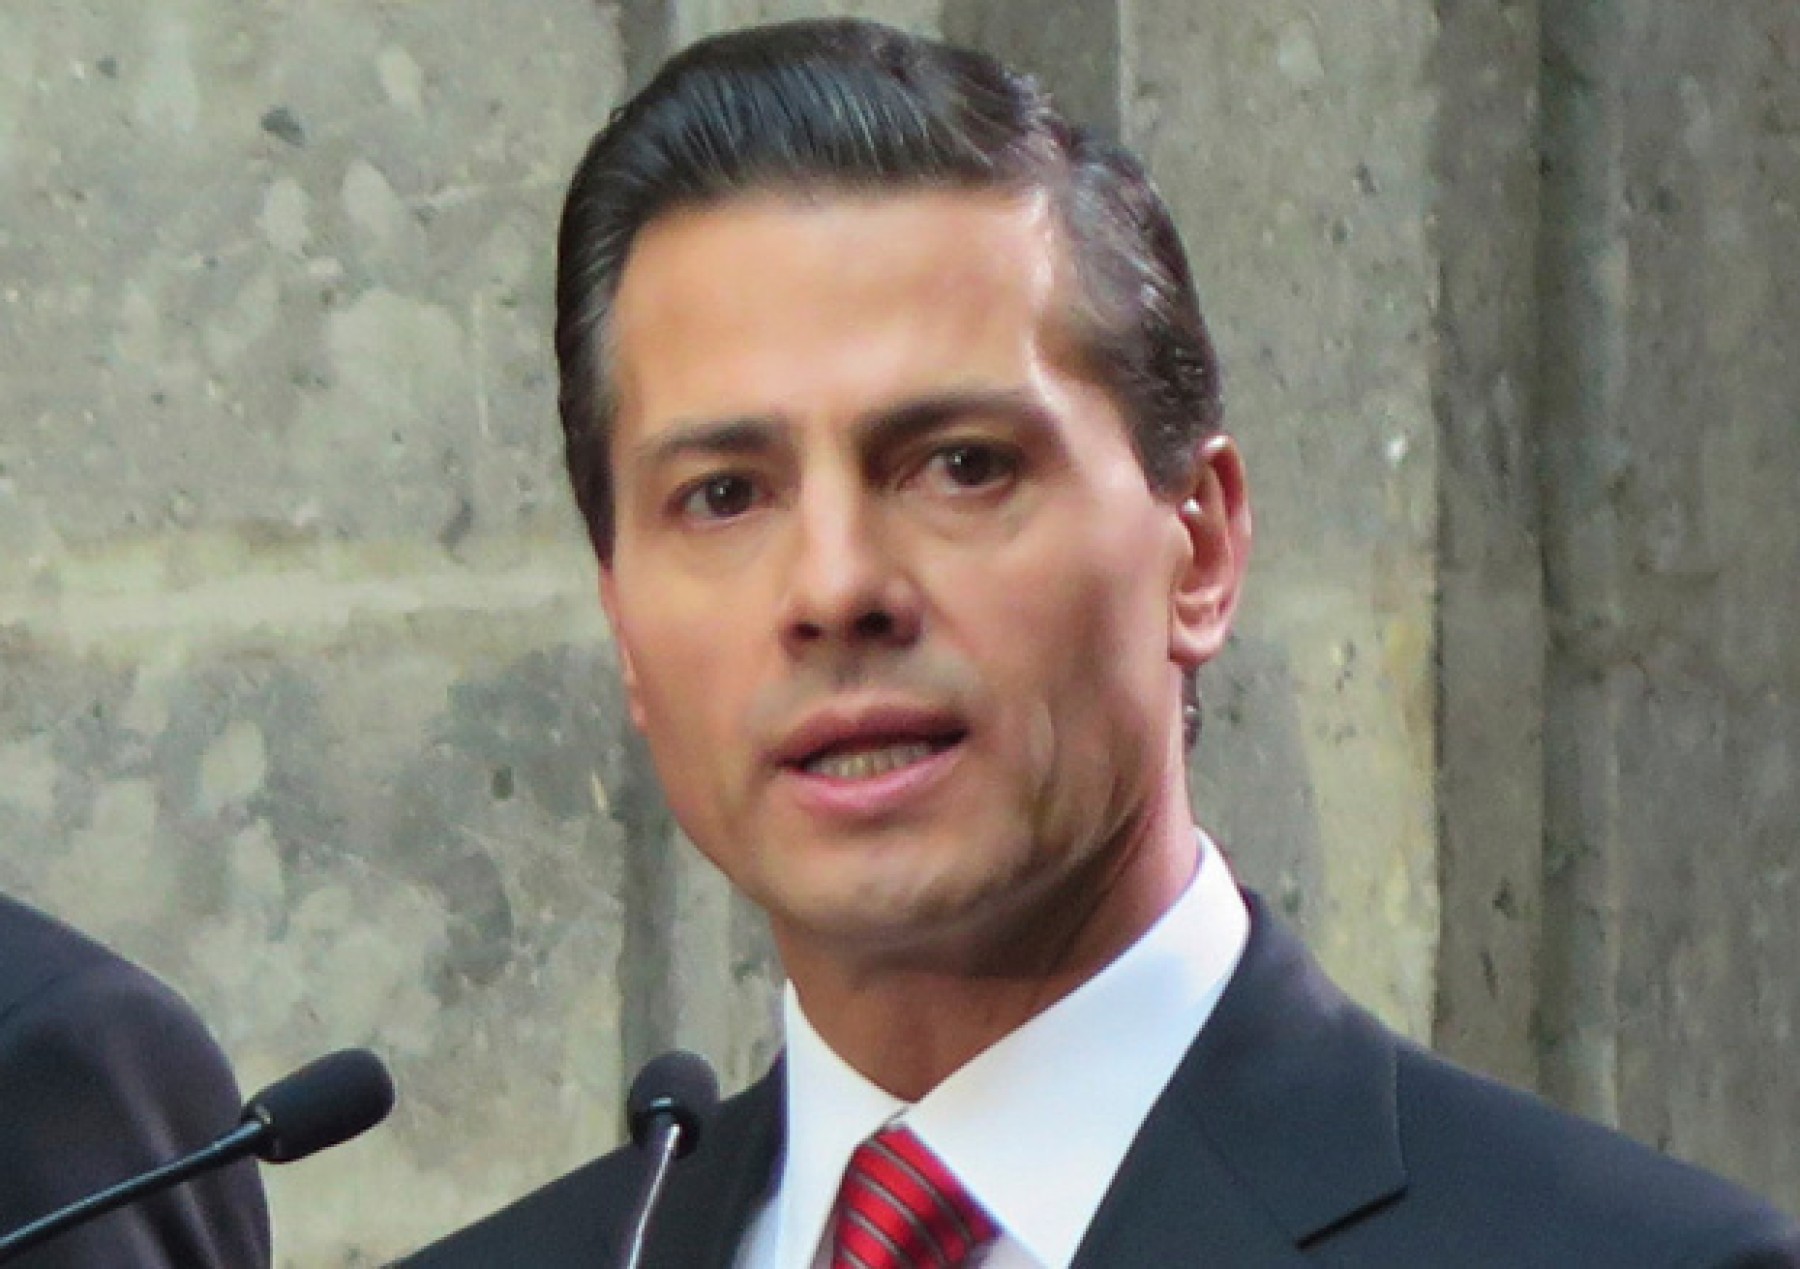 Peña Nieto reaparece en una boda en República Dominicana | Diario 2001